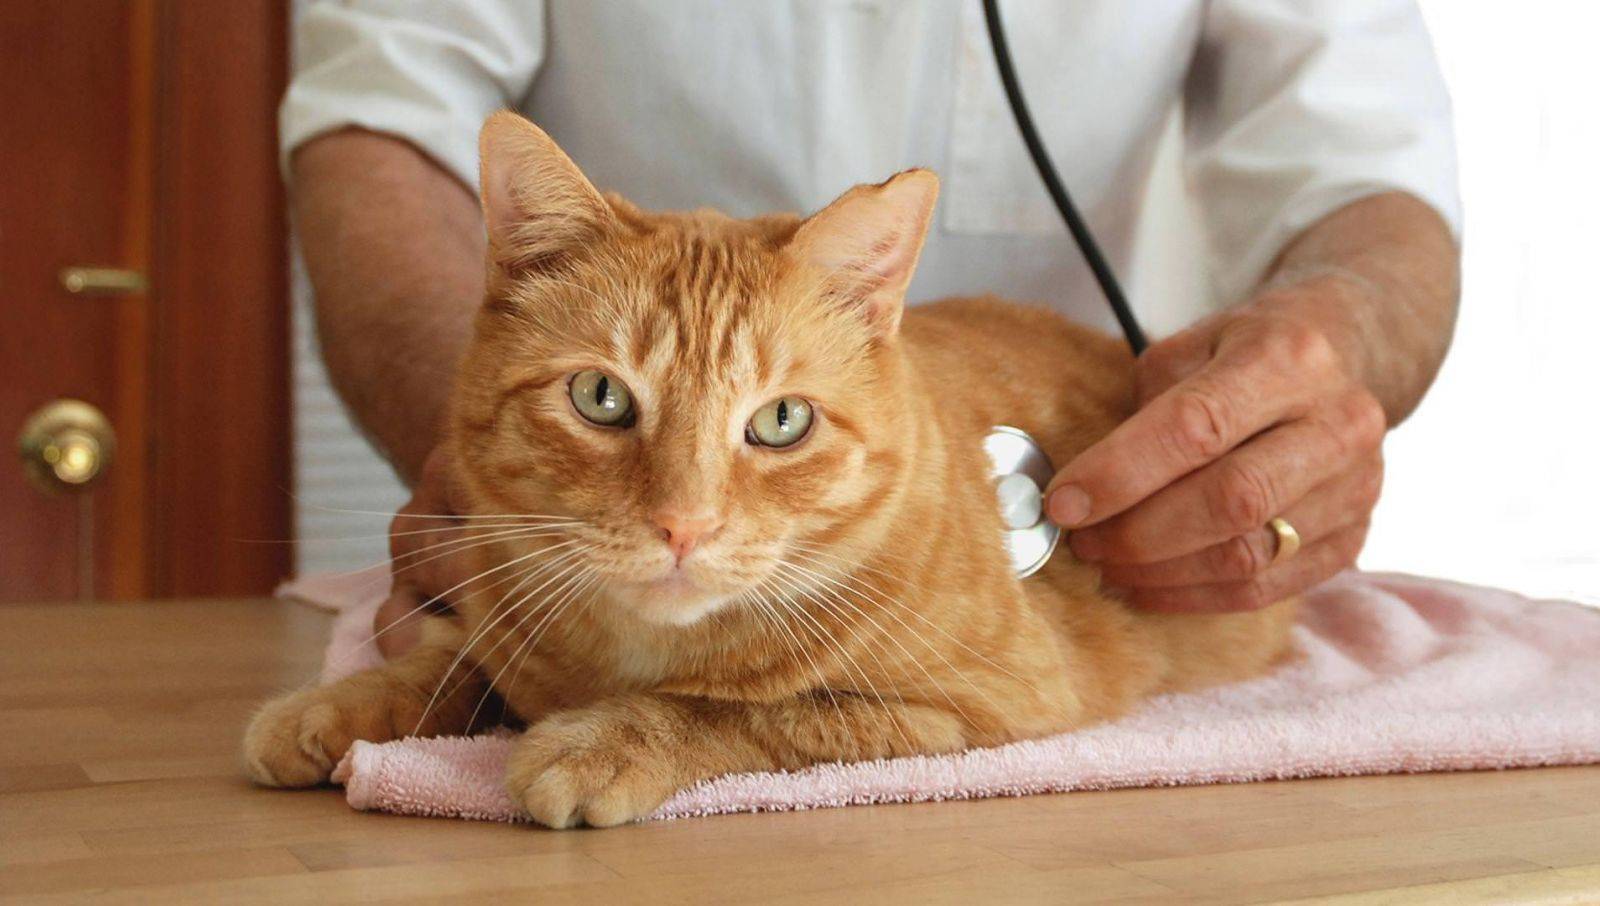 Симптомы гастрита у кошек и лечение алмагелем в домашних условиях, как снять боль при гастрите, как лечить уремический гастрит у кошки